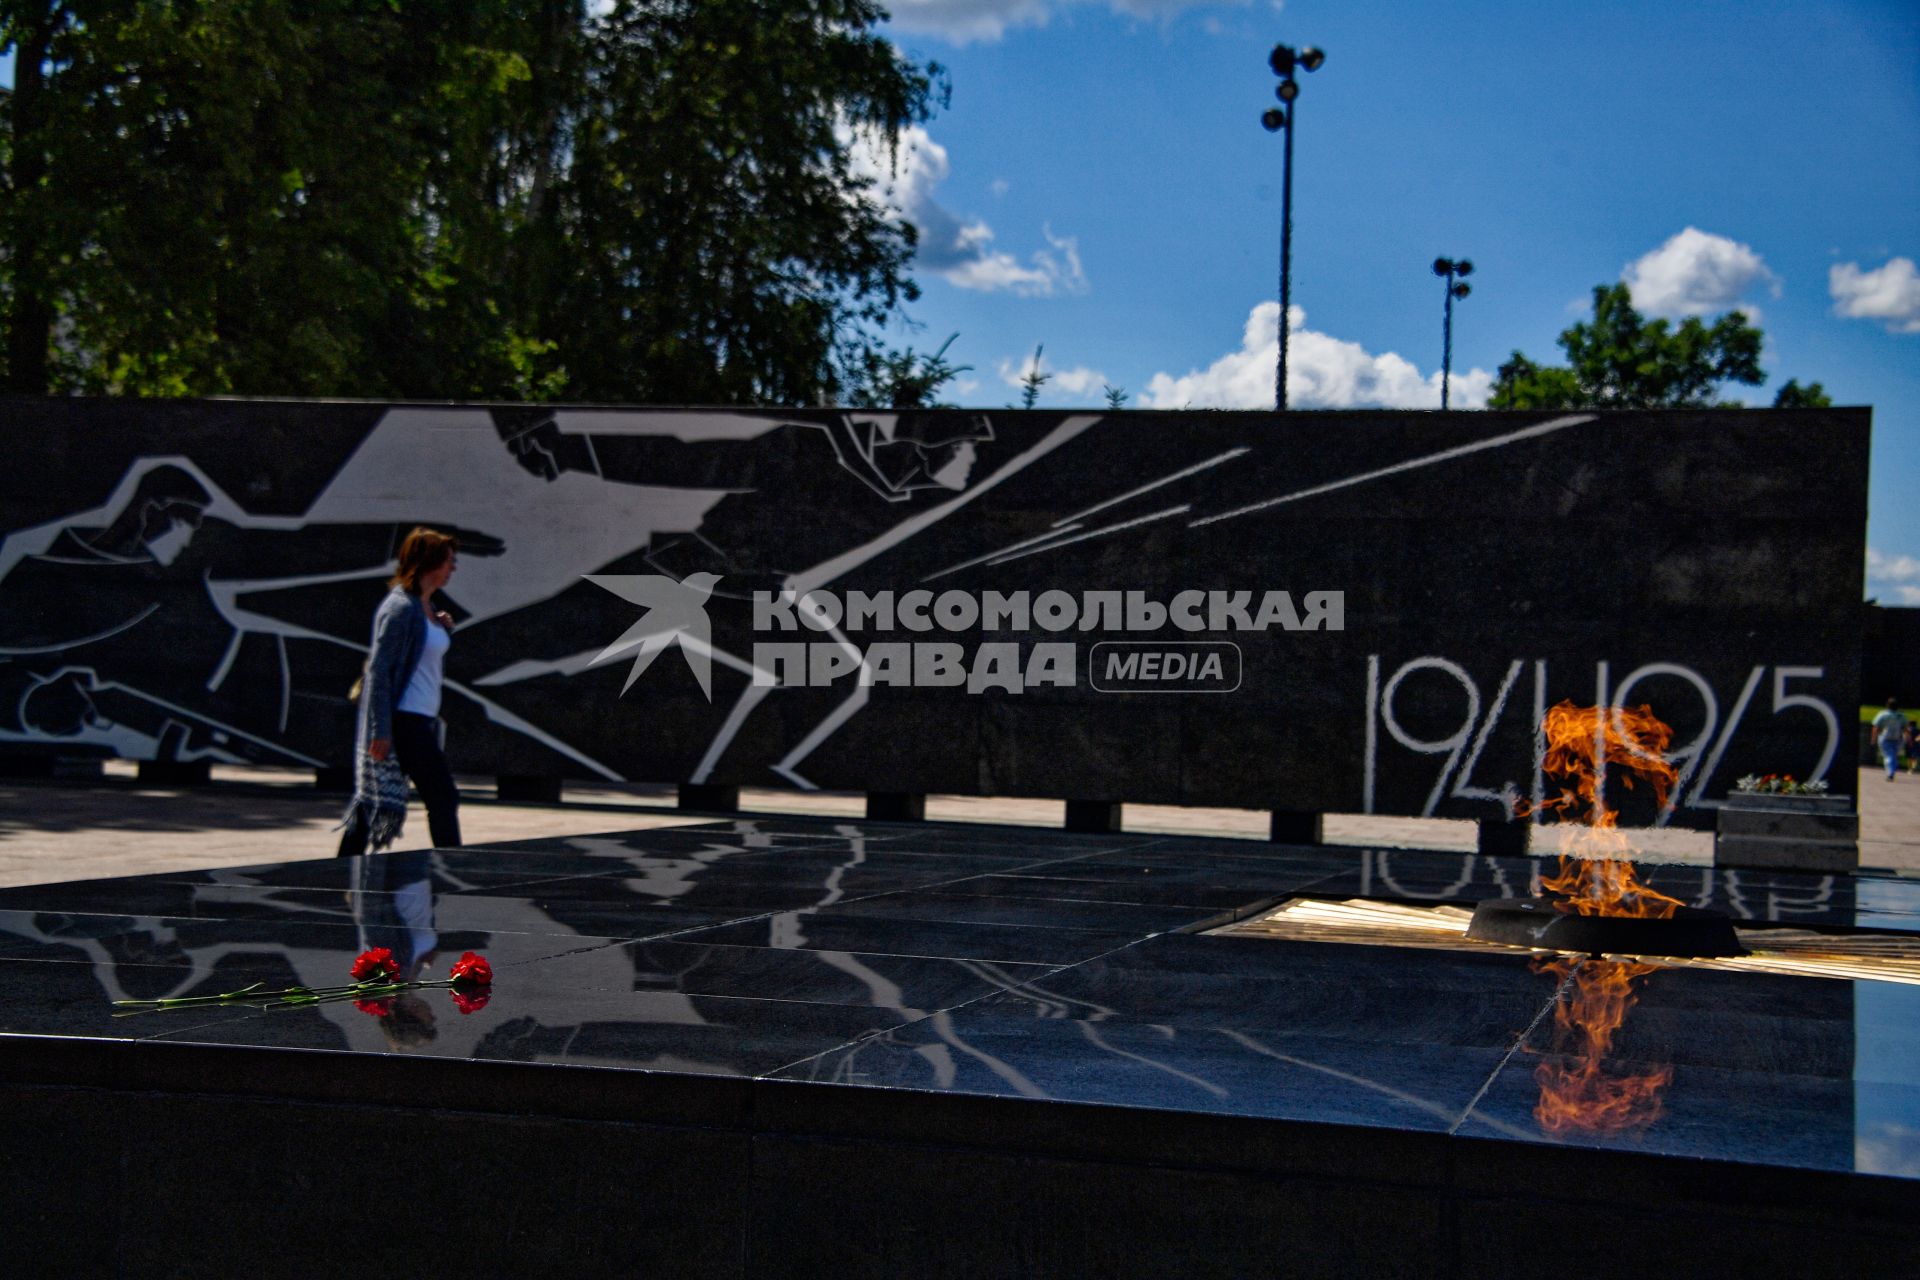 Нижний Новгород. Мемориал памяти горьковчан, погибших на фронтах Великой Отечественной войны, на территории Нижегородского кремля.